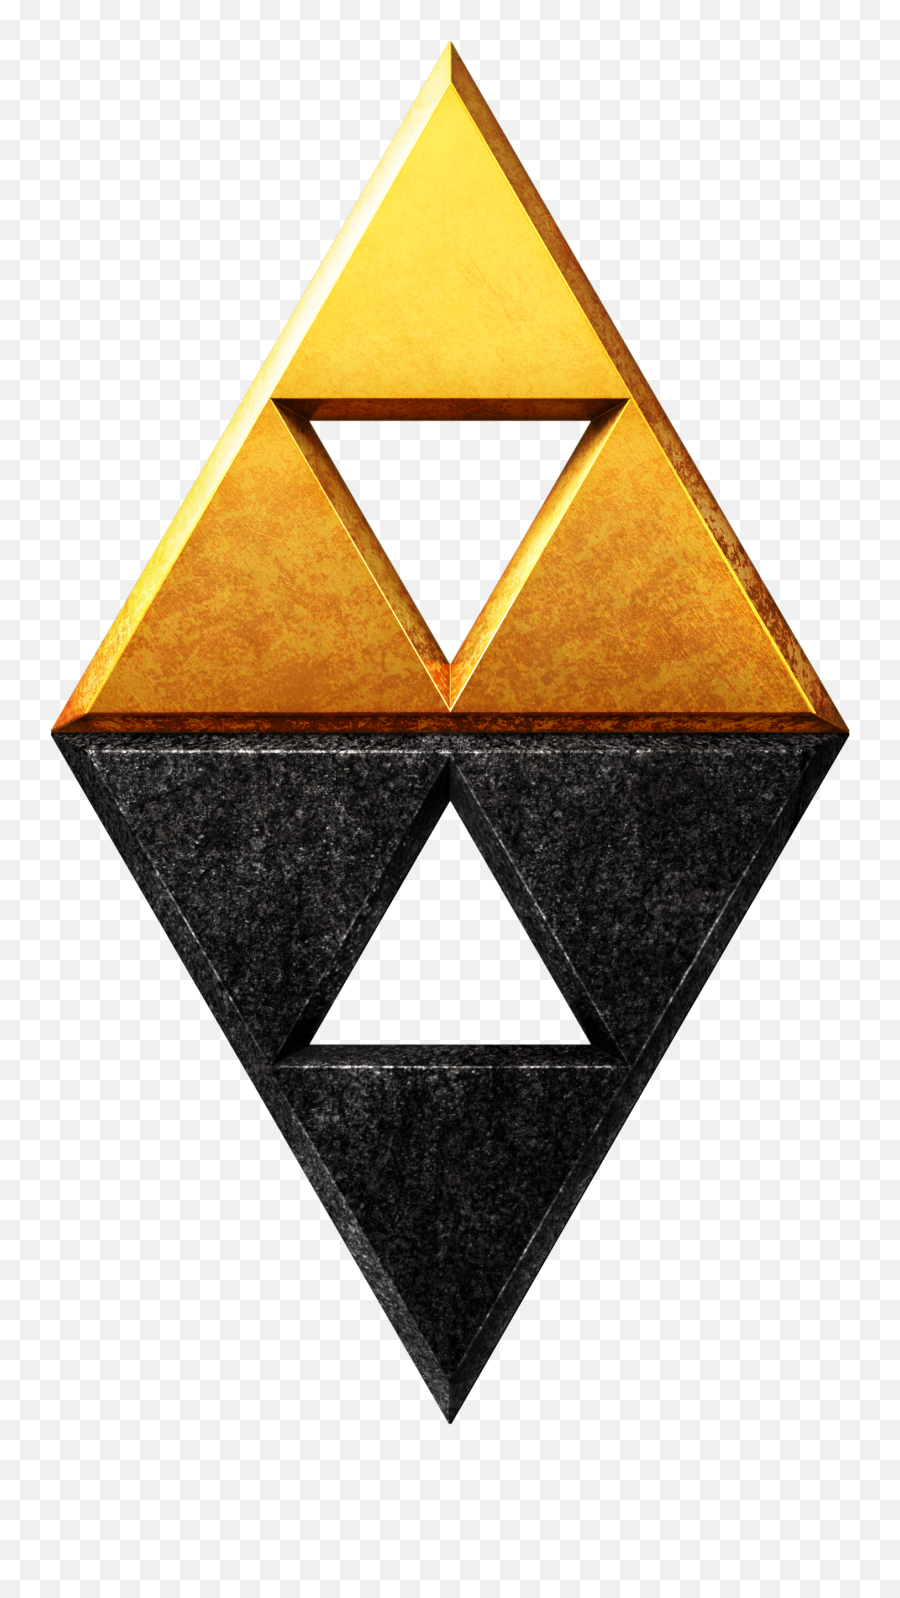 Legend Of Zelda Link Between - Legend Of Zelda Triforce Png,Triforce Transparent Background